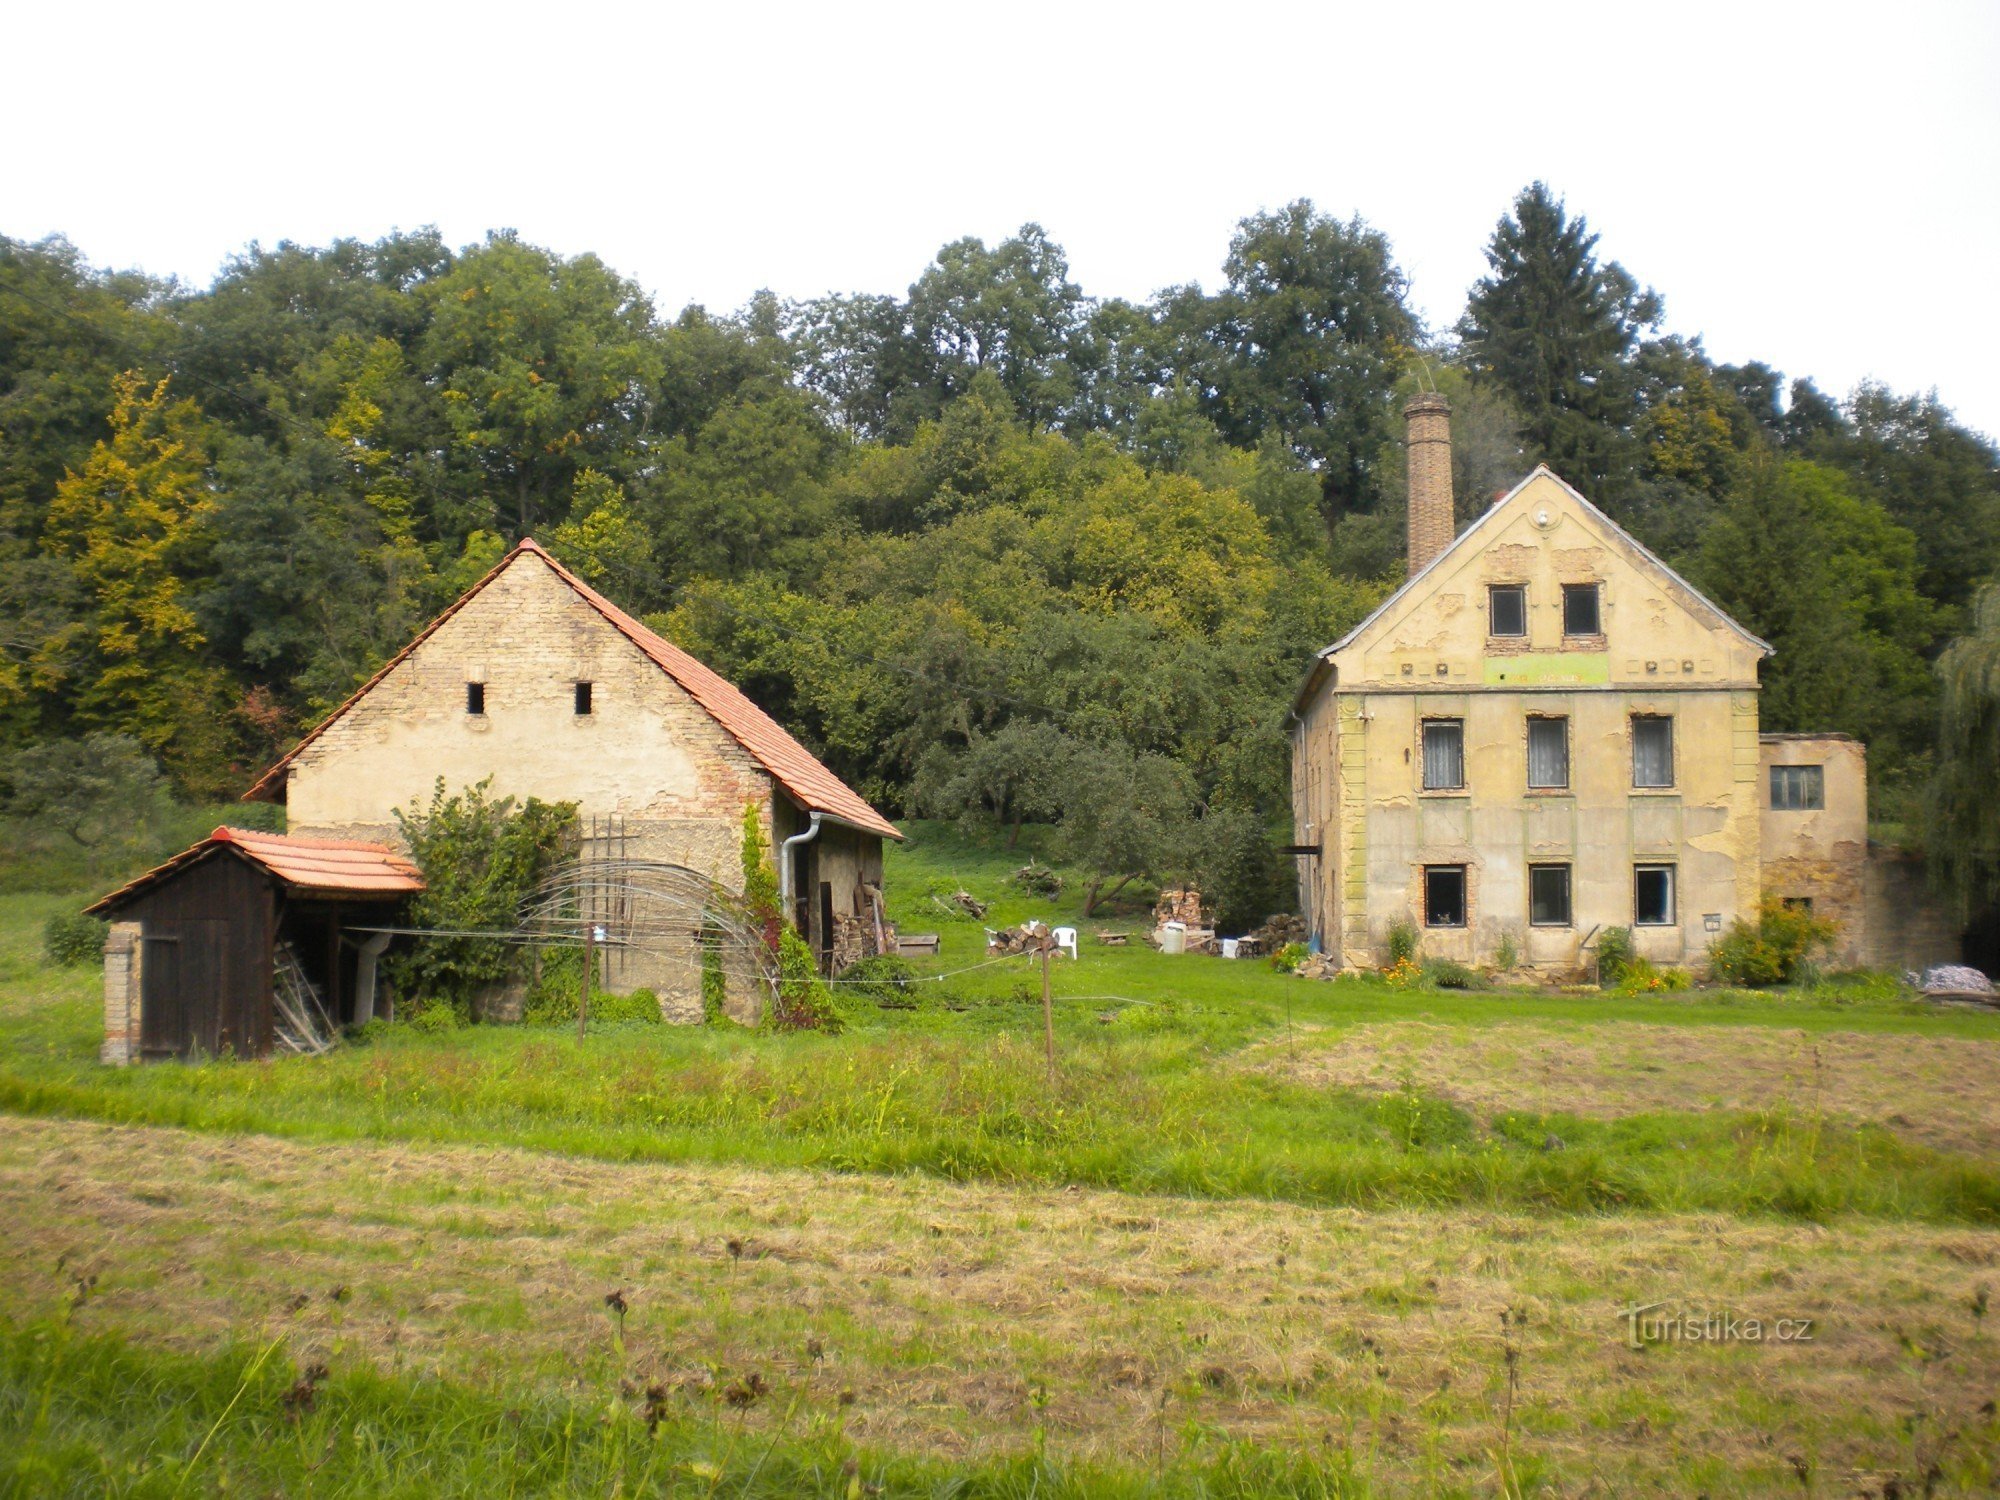 Um dos moinhos de Opárenské údolí.